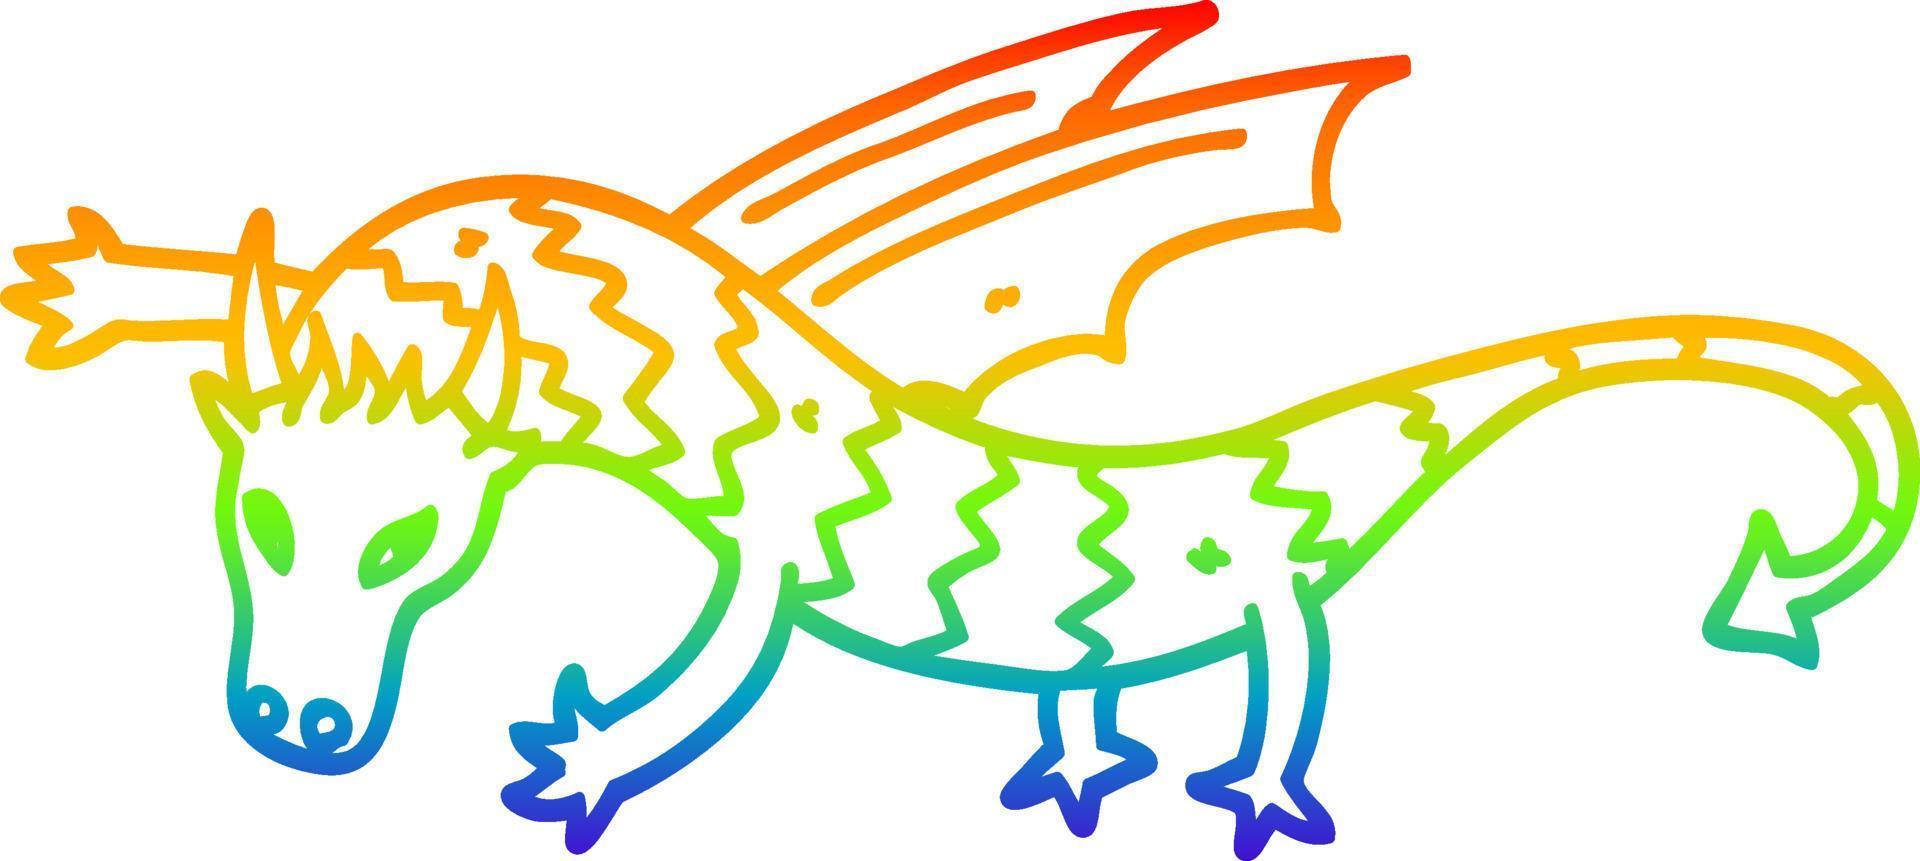 arco iris gradiente línea dibujo dibujos animados dragón volador vector